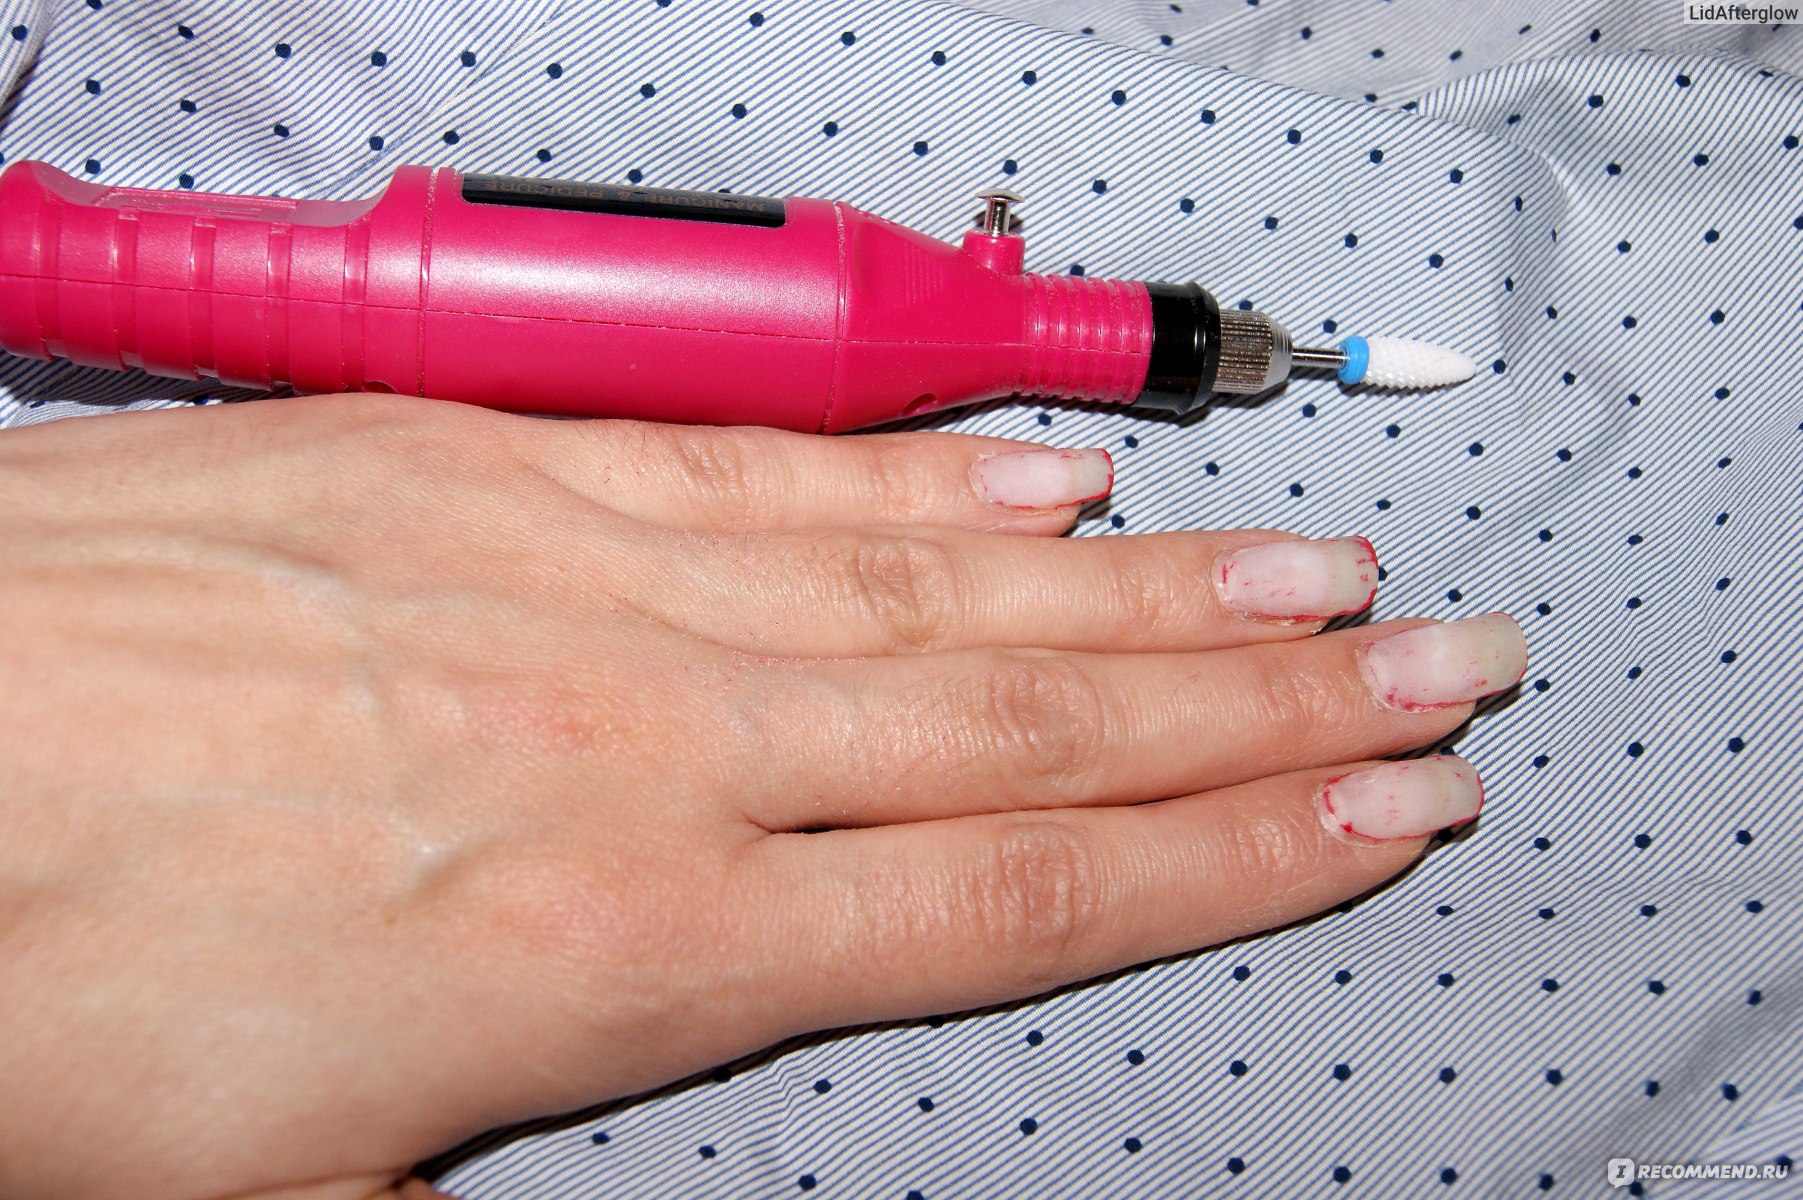 Вреден ли гель-лак для ногтей, и еще шесть важных вопросов о маникюре